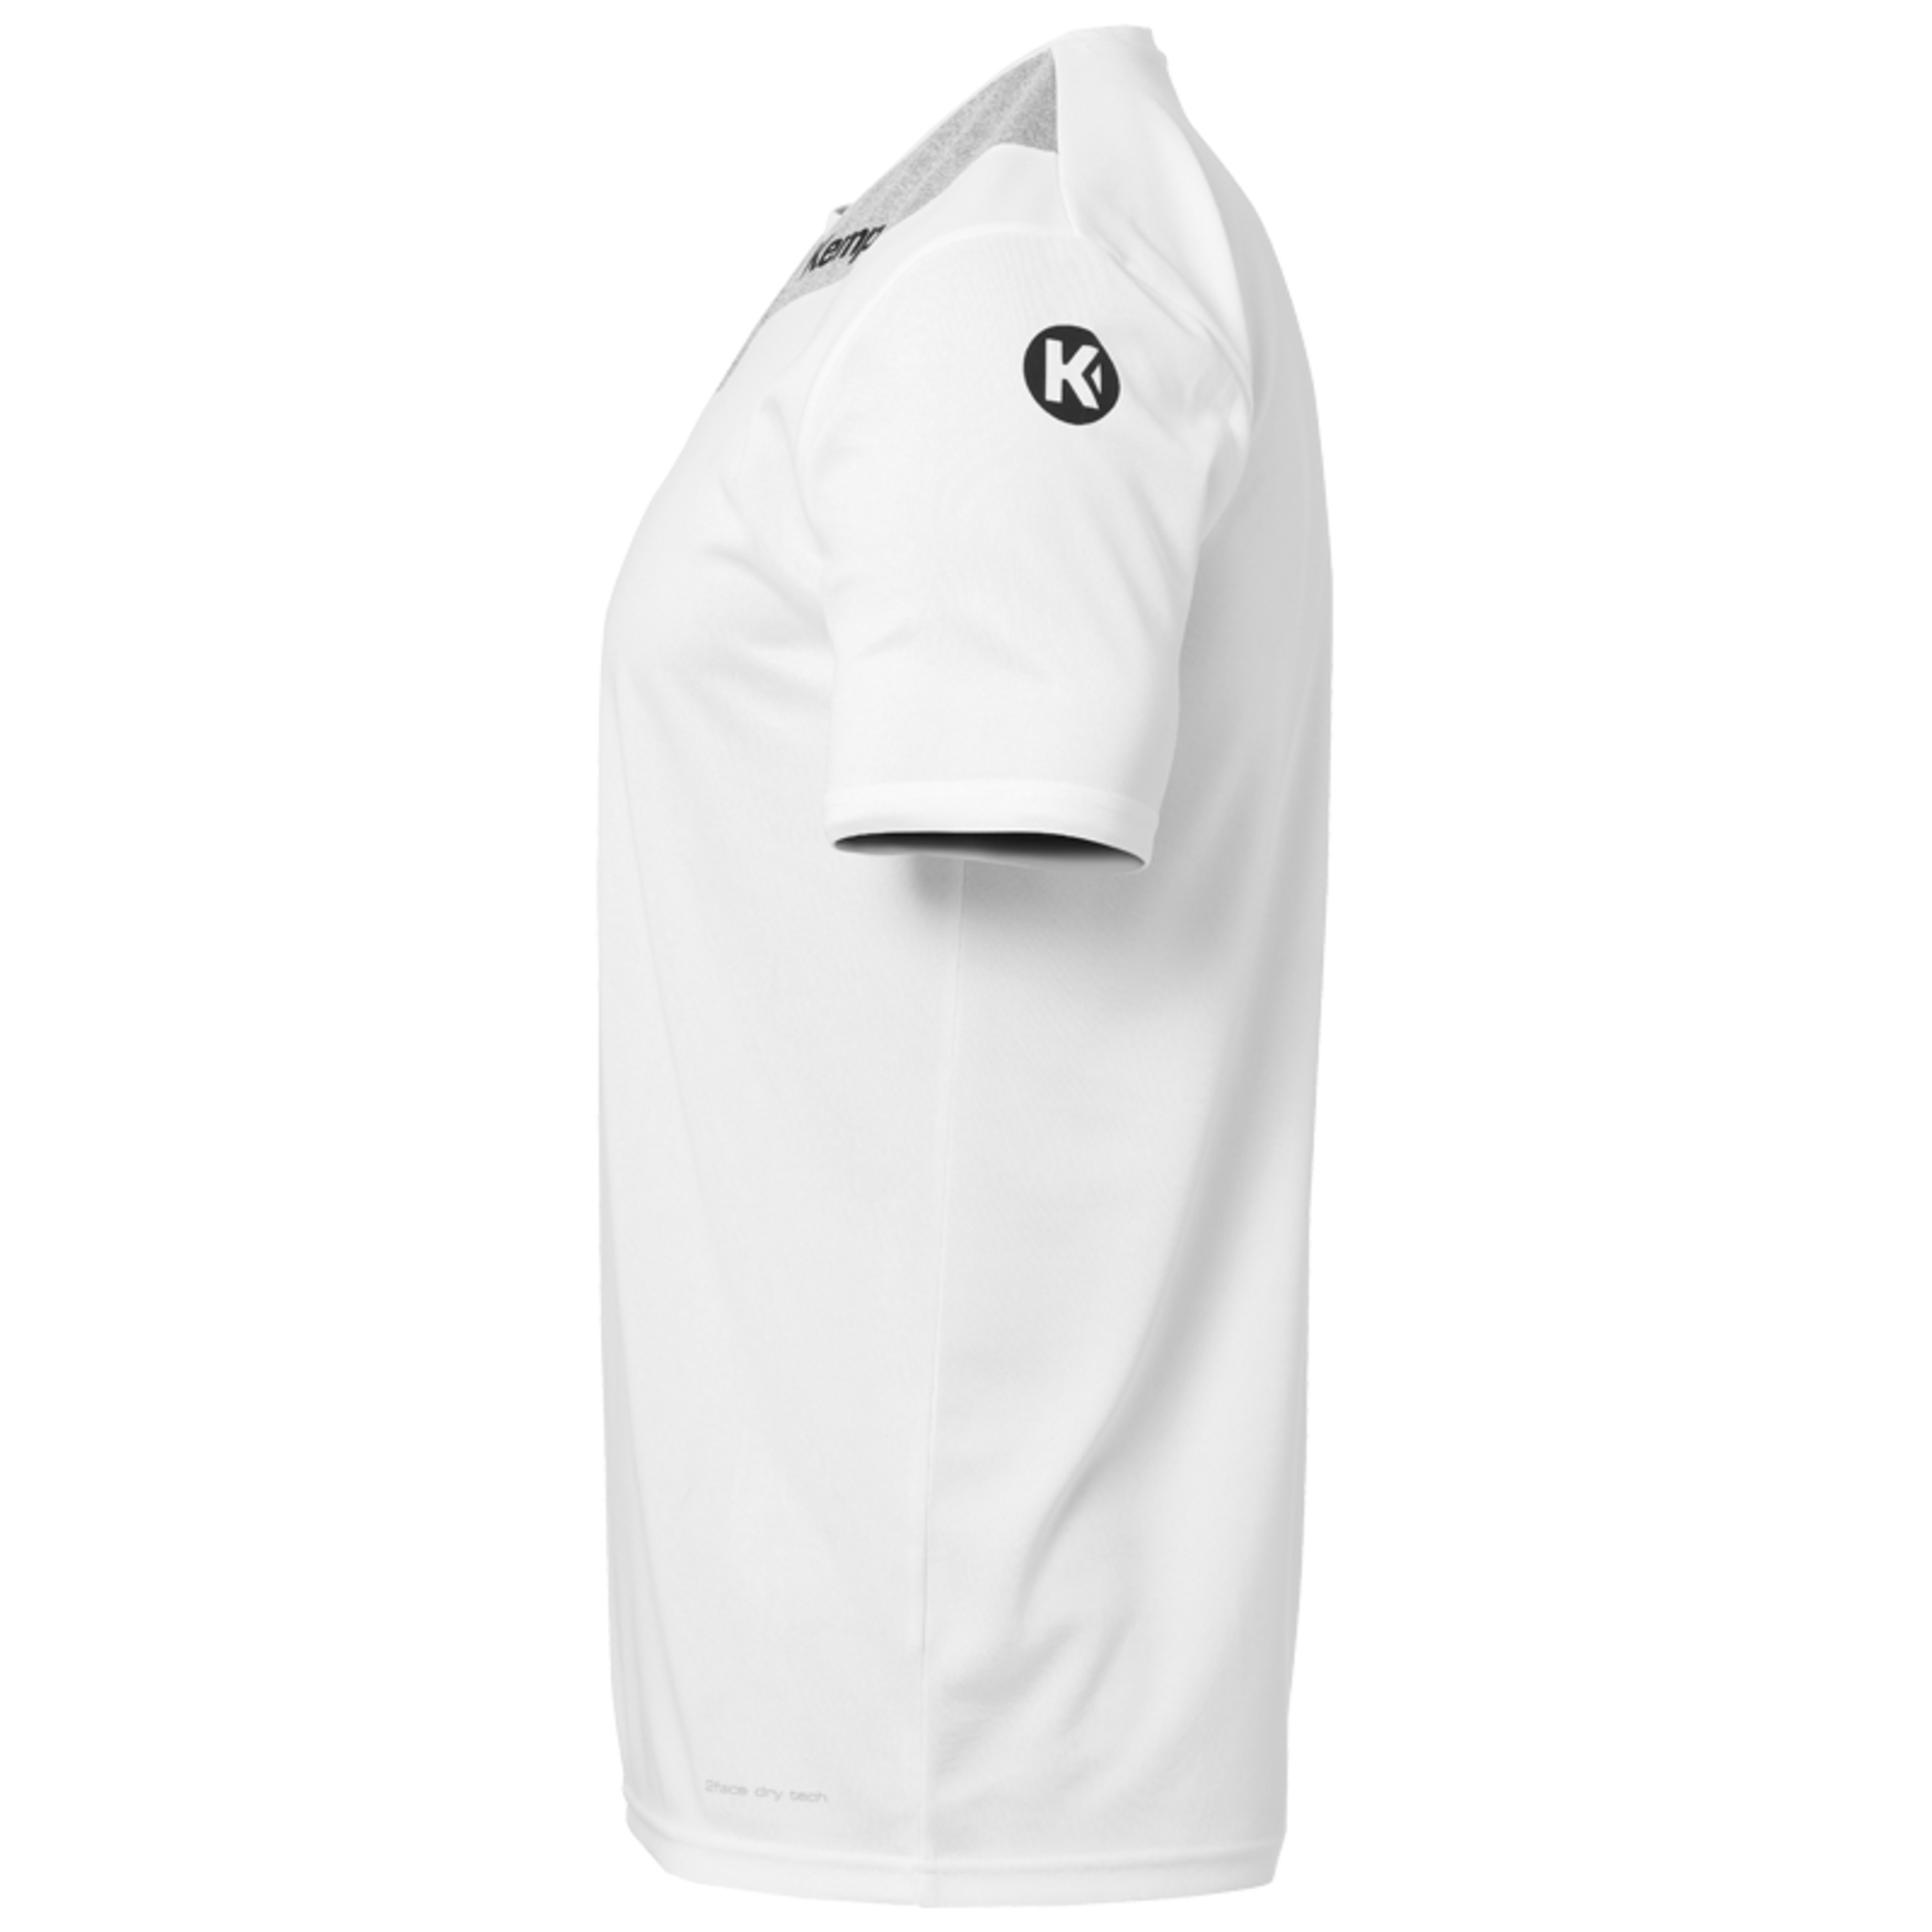 Core 2.0 Shirt Blanco/gris Oscuro Mezcla Kempa - blanco - Core 2.0 Shirt Blanco/gris Oscuro Mezcla Kempa  MKP